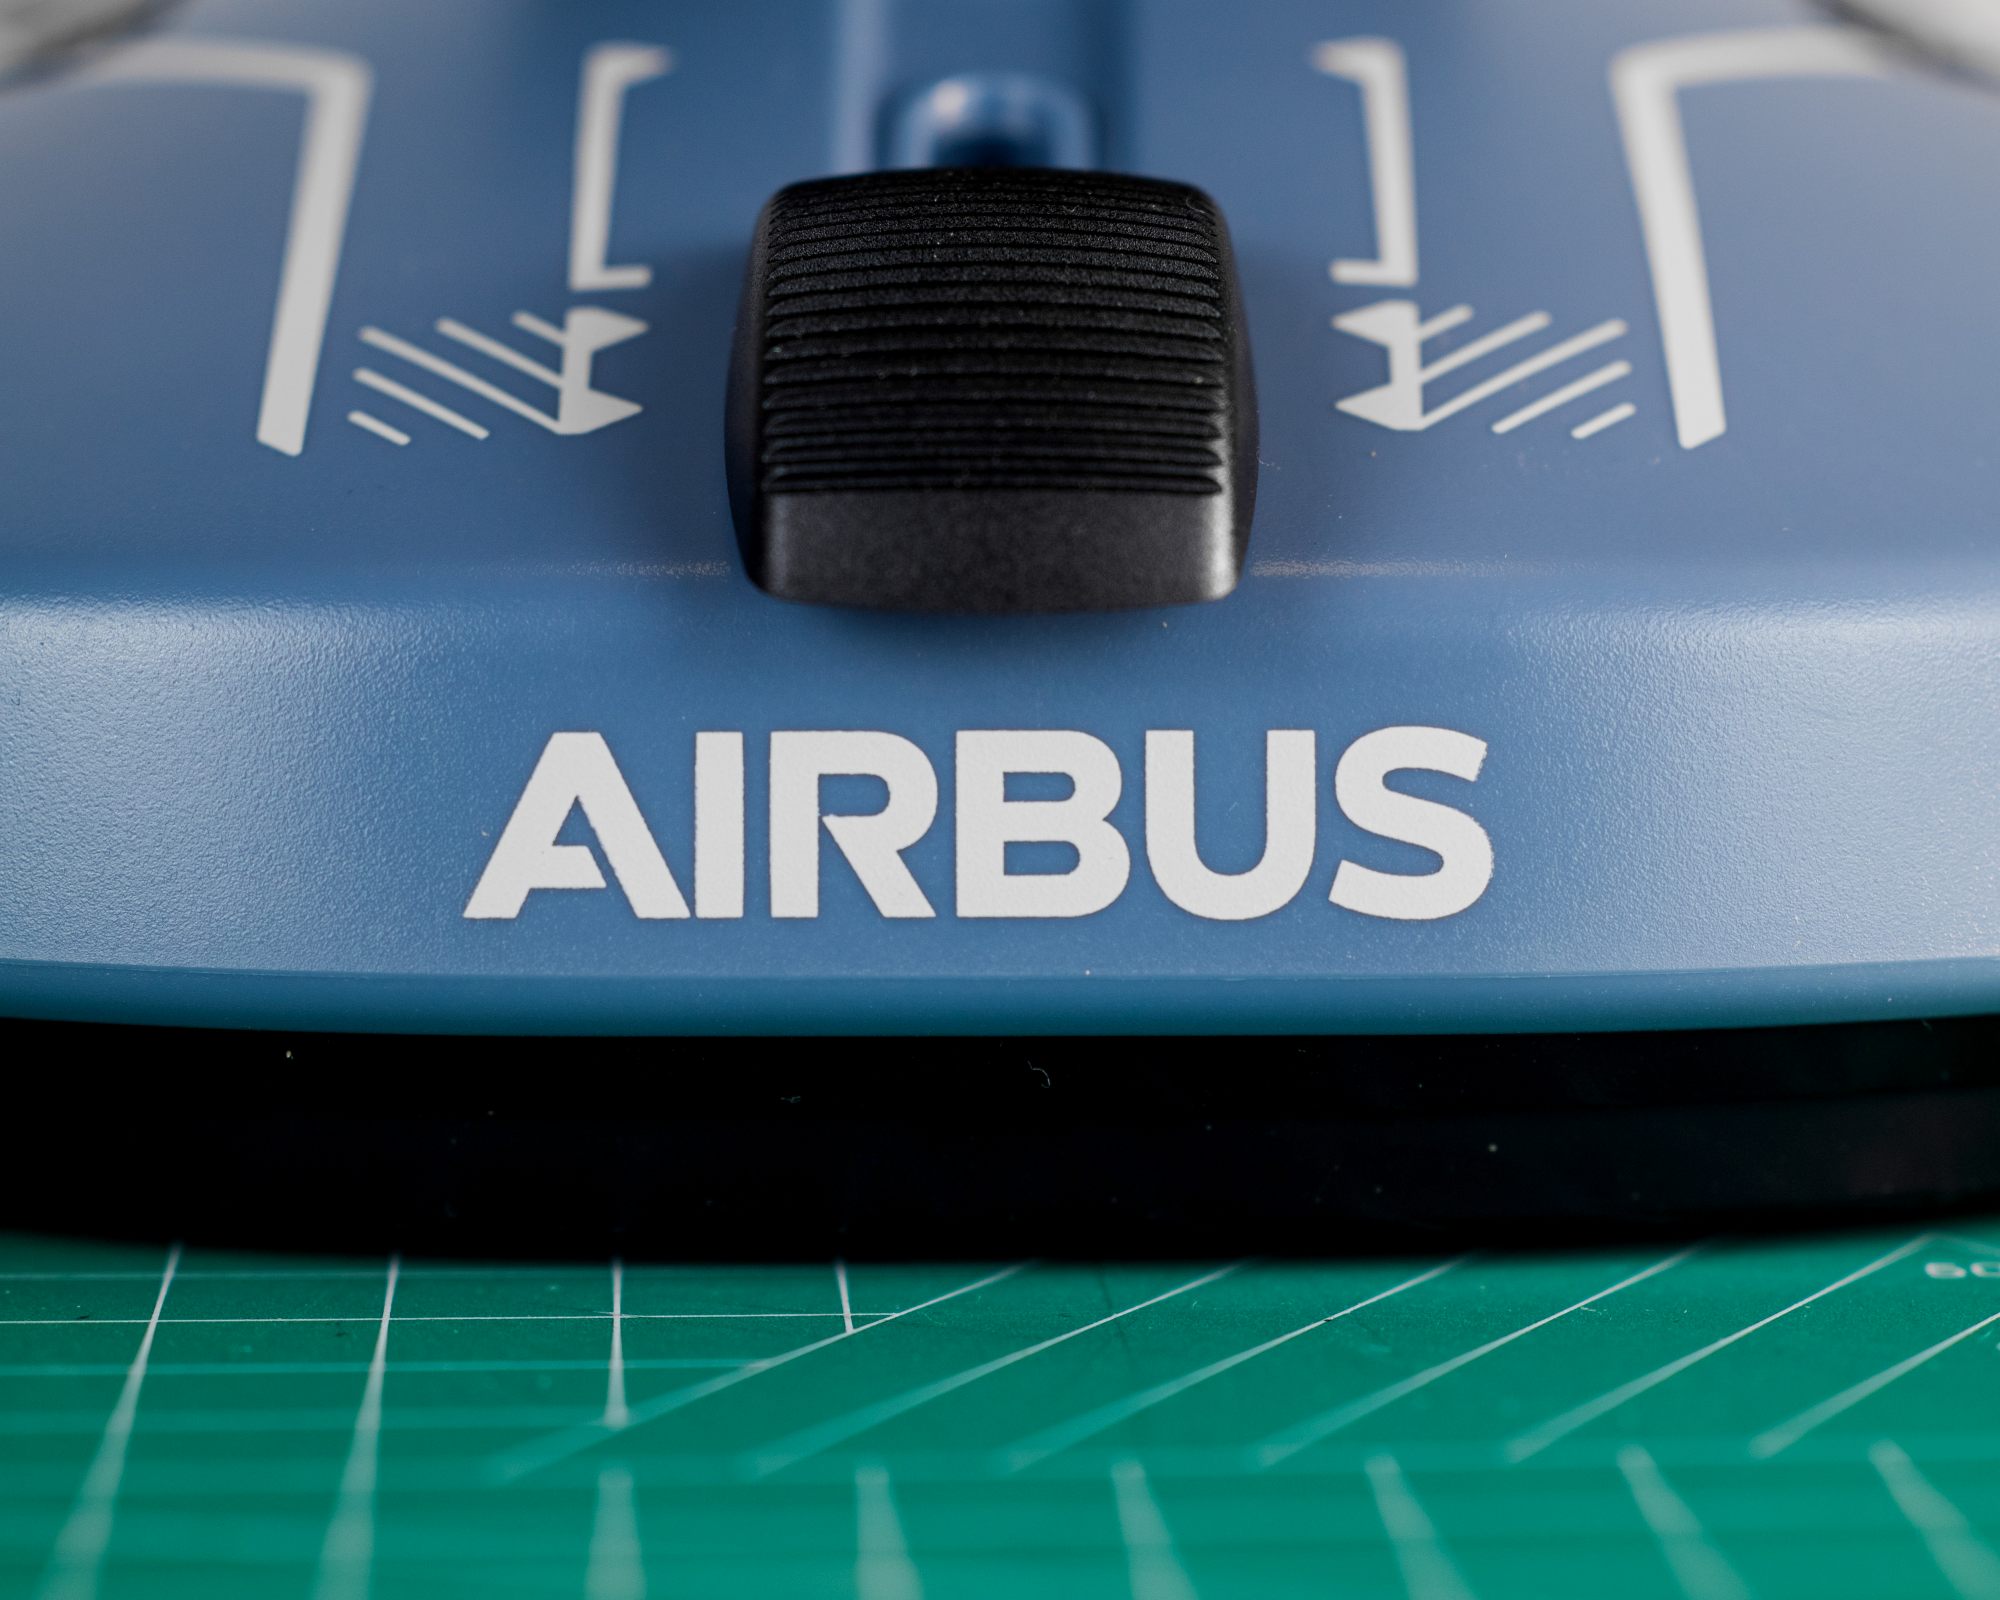 这个Airbus的标还是挺棒的